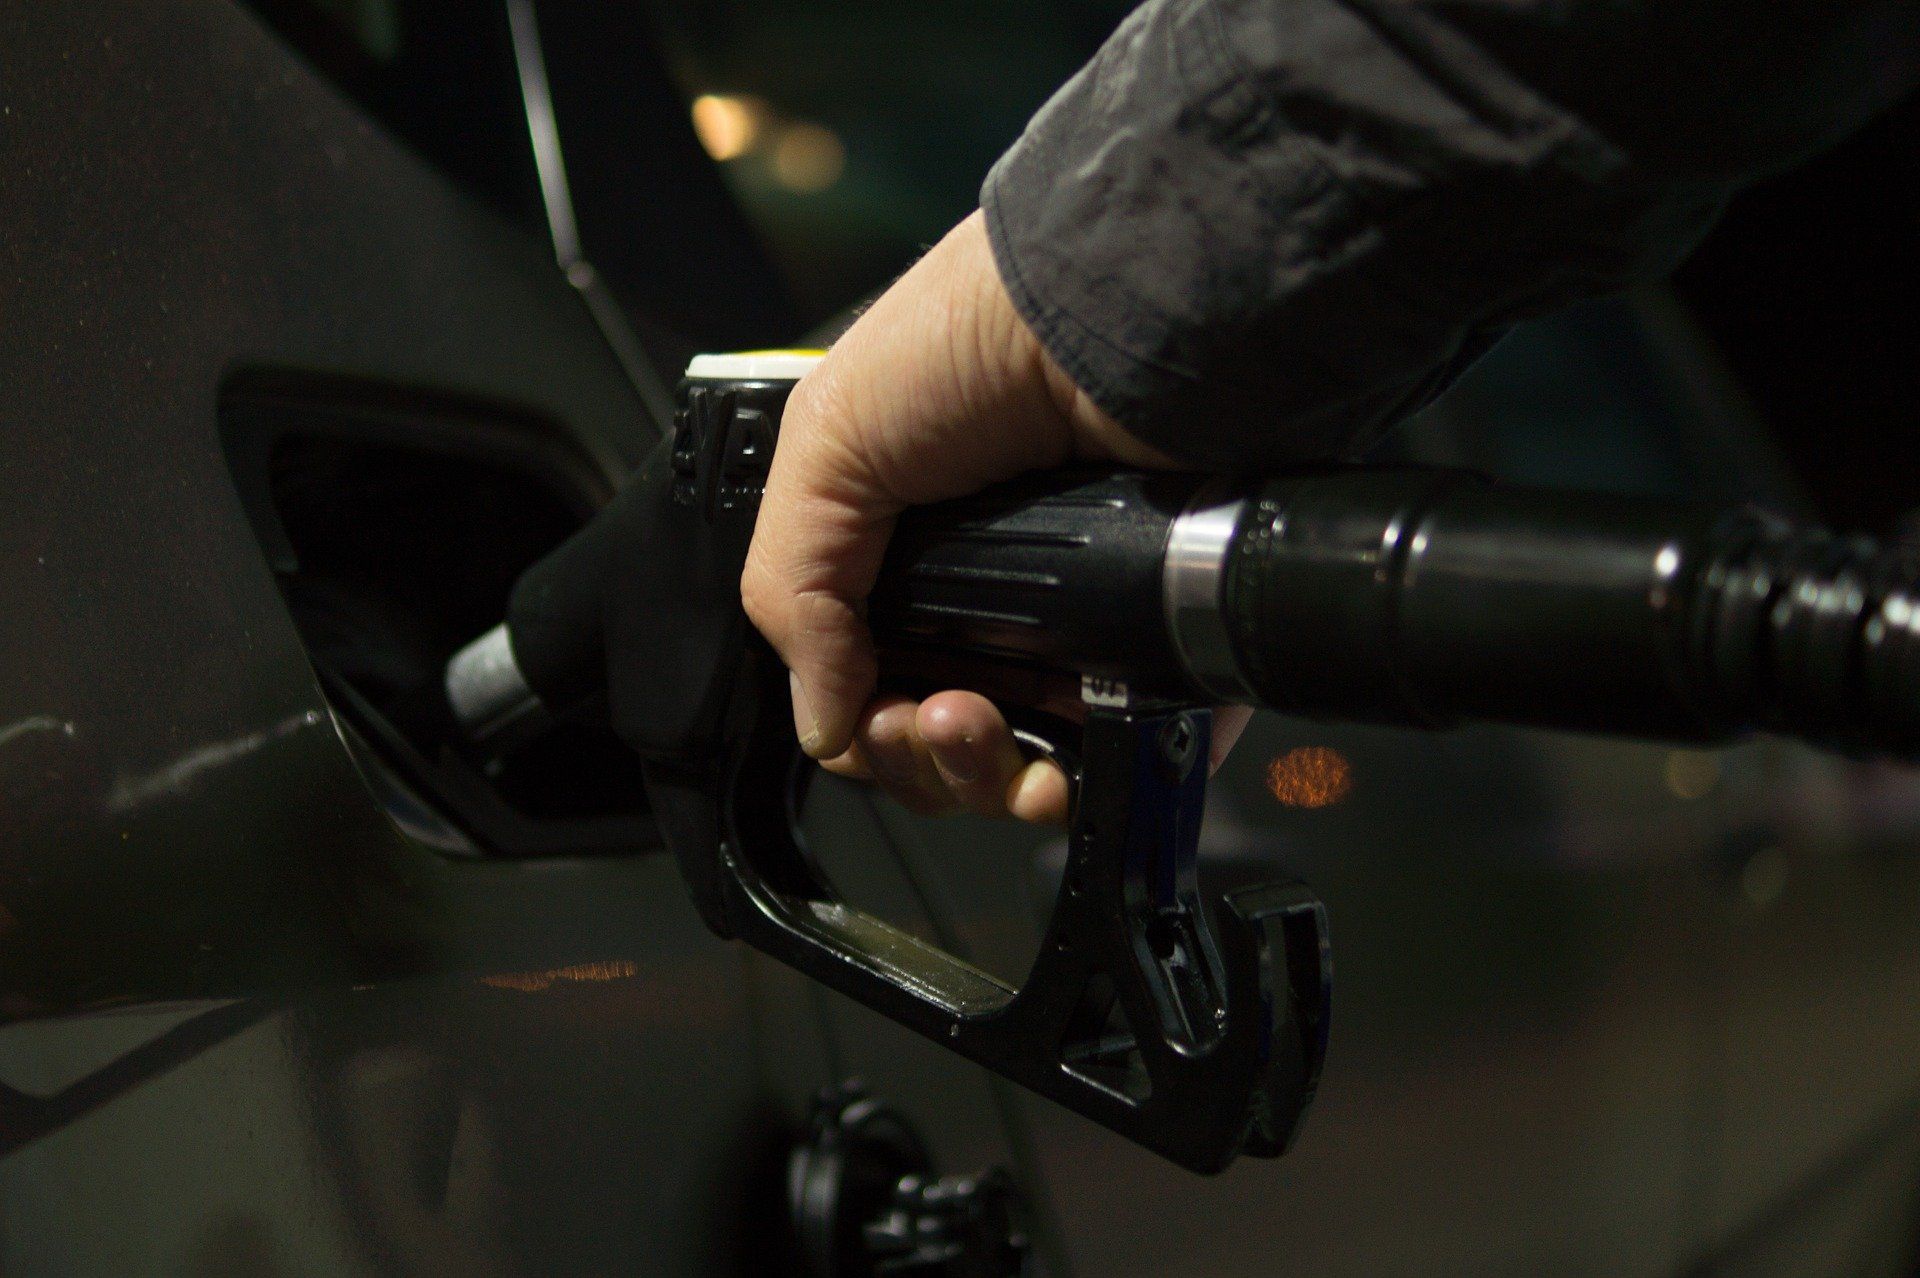 Fuel price July 15, 2022: Petrol Rs 105.31, diesel Rs 94.27 in Mumbai